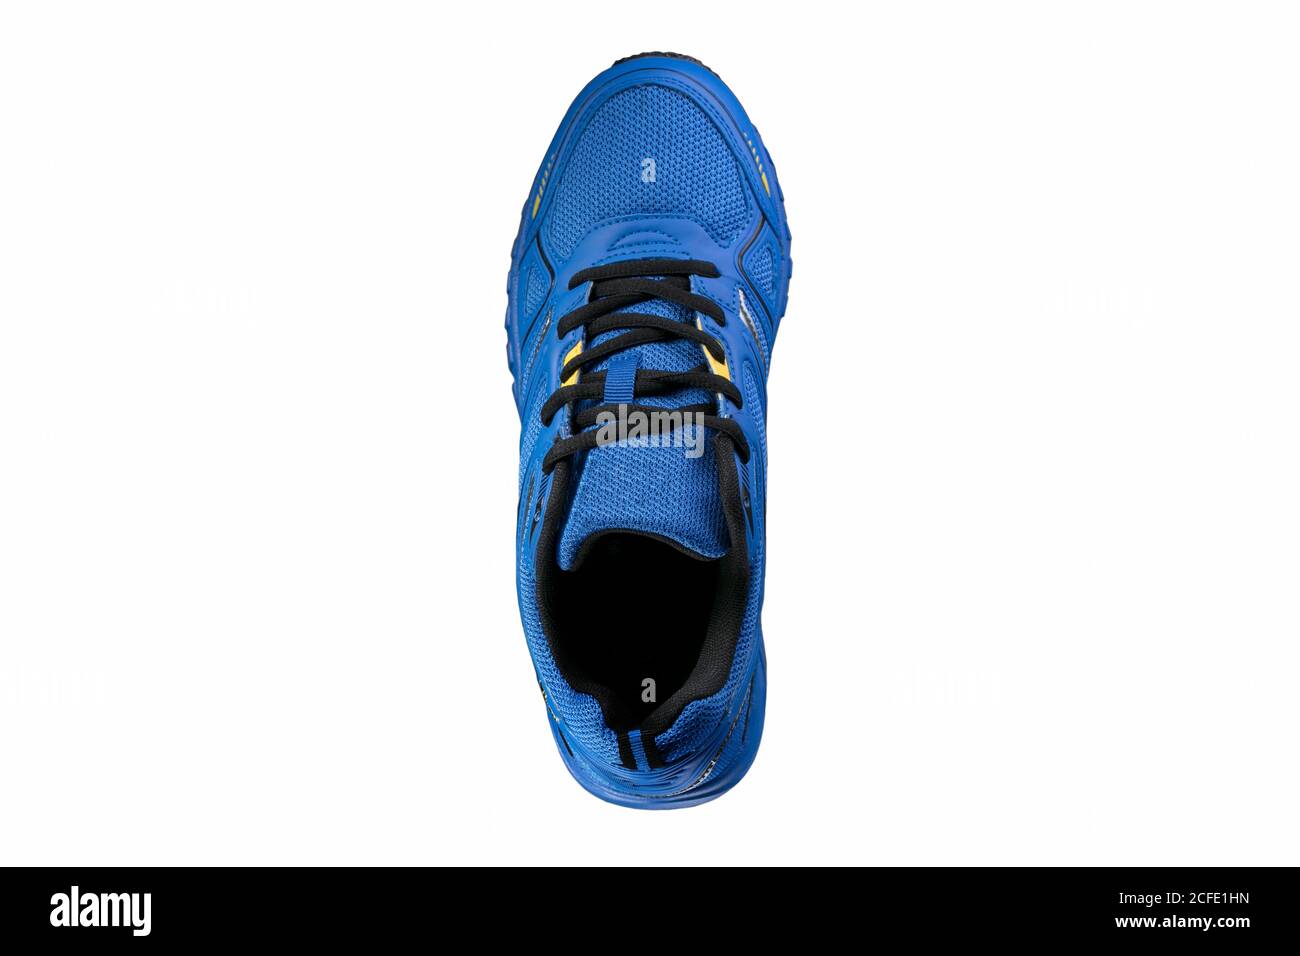 Blauer Sneaker mit schwarzen Akzenten auf isoliert. Sportschuhe  Stockfotografie - Alamy